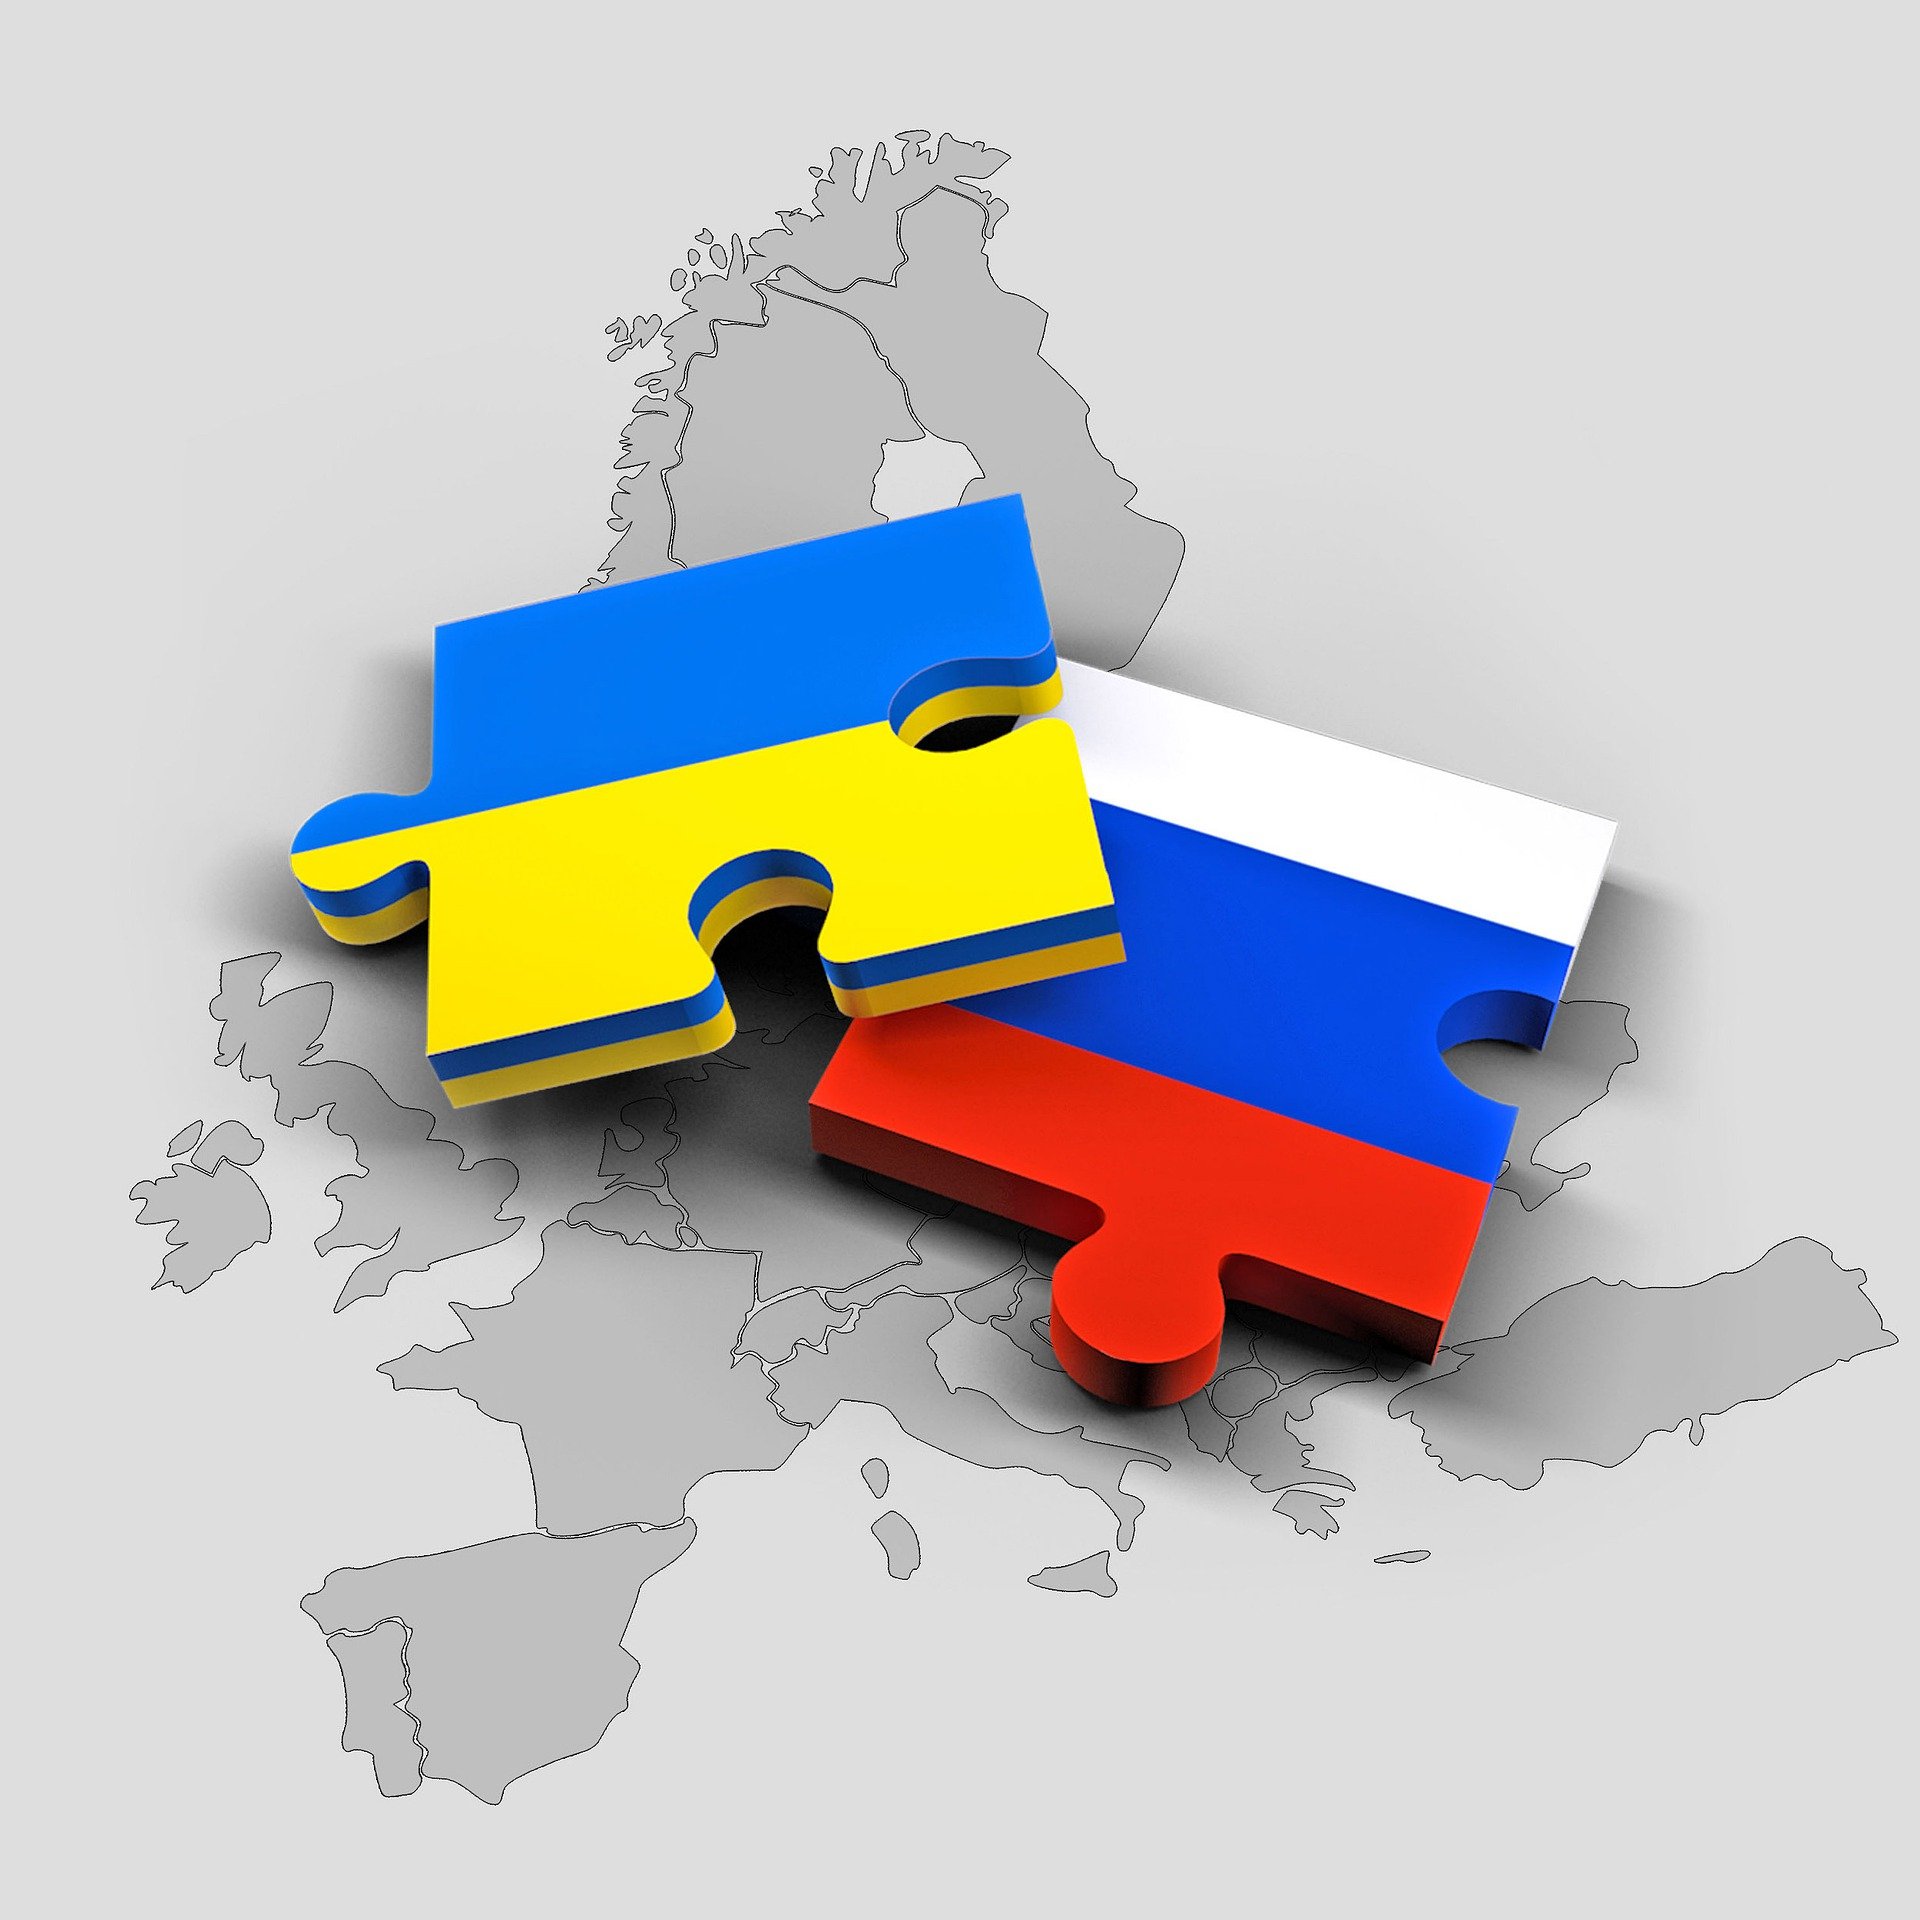 Germania a depăşit „linia roşie” livrând arme grele Ucrainei, declară ambasadorul rus la Berlin